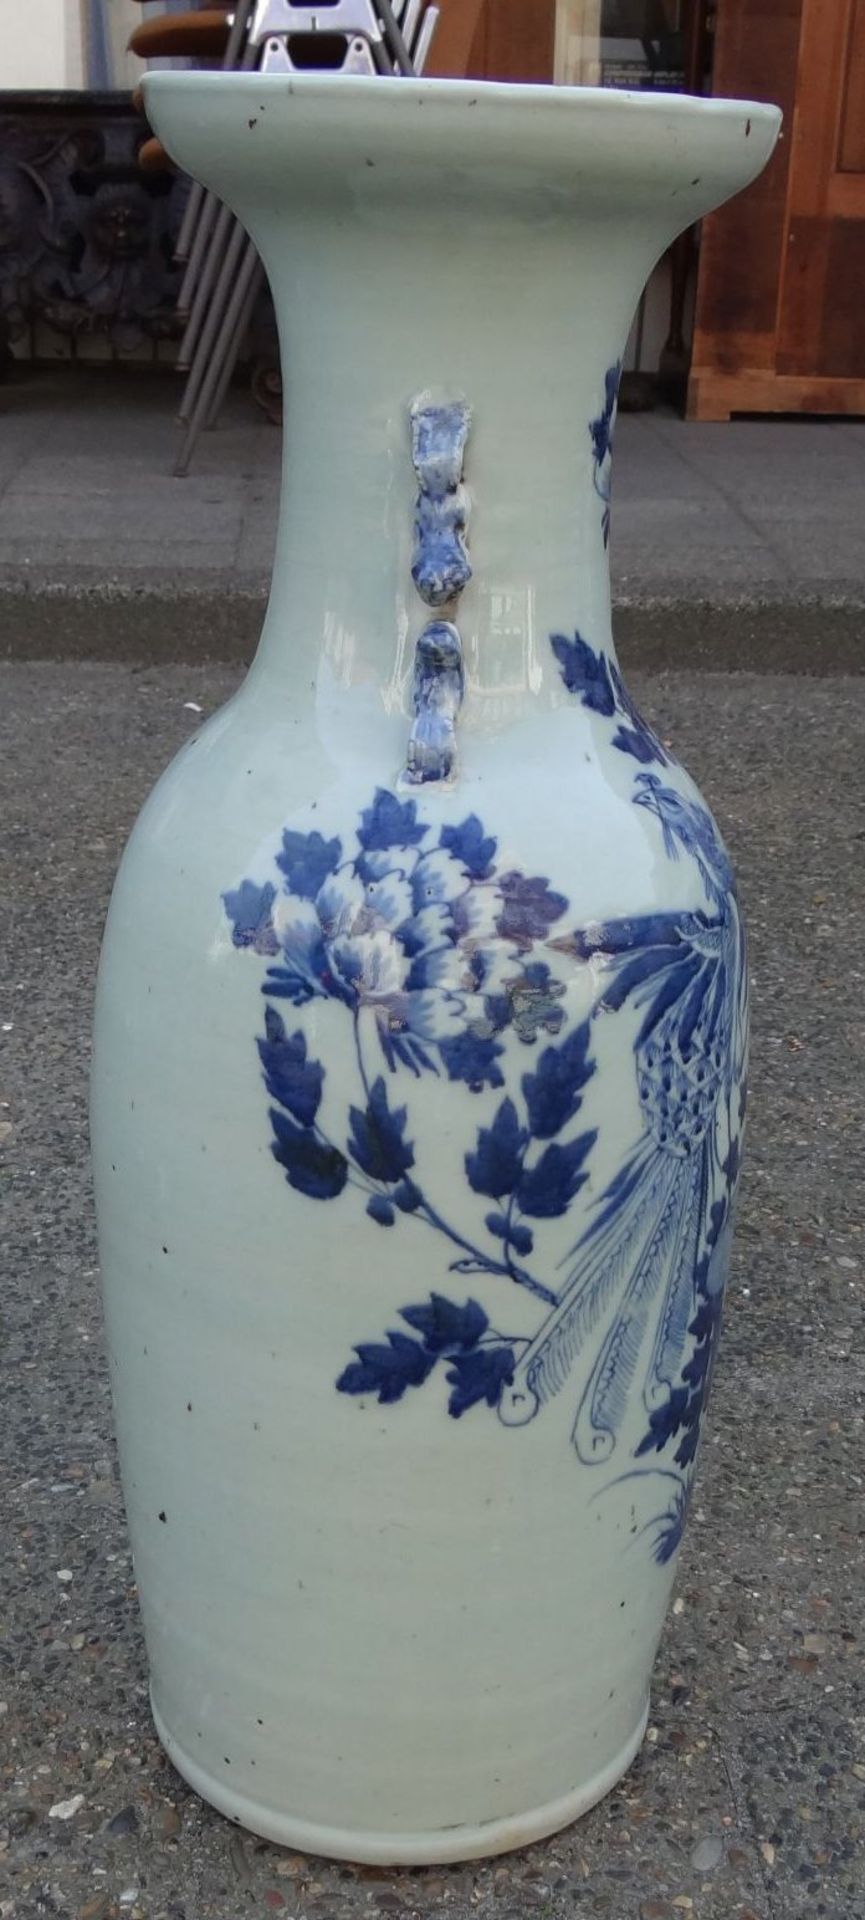 *hohe China-Vase mit Blaumalerei, älter, mehtrfach geklebt, Altrisse, H-58 cm, D-18 c - Bild 4 aus 8